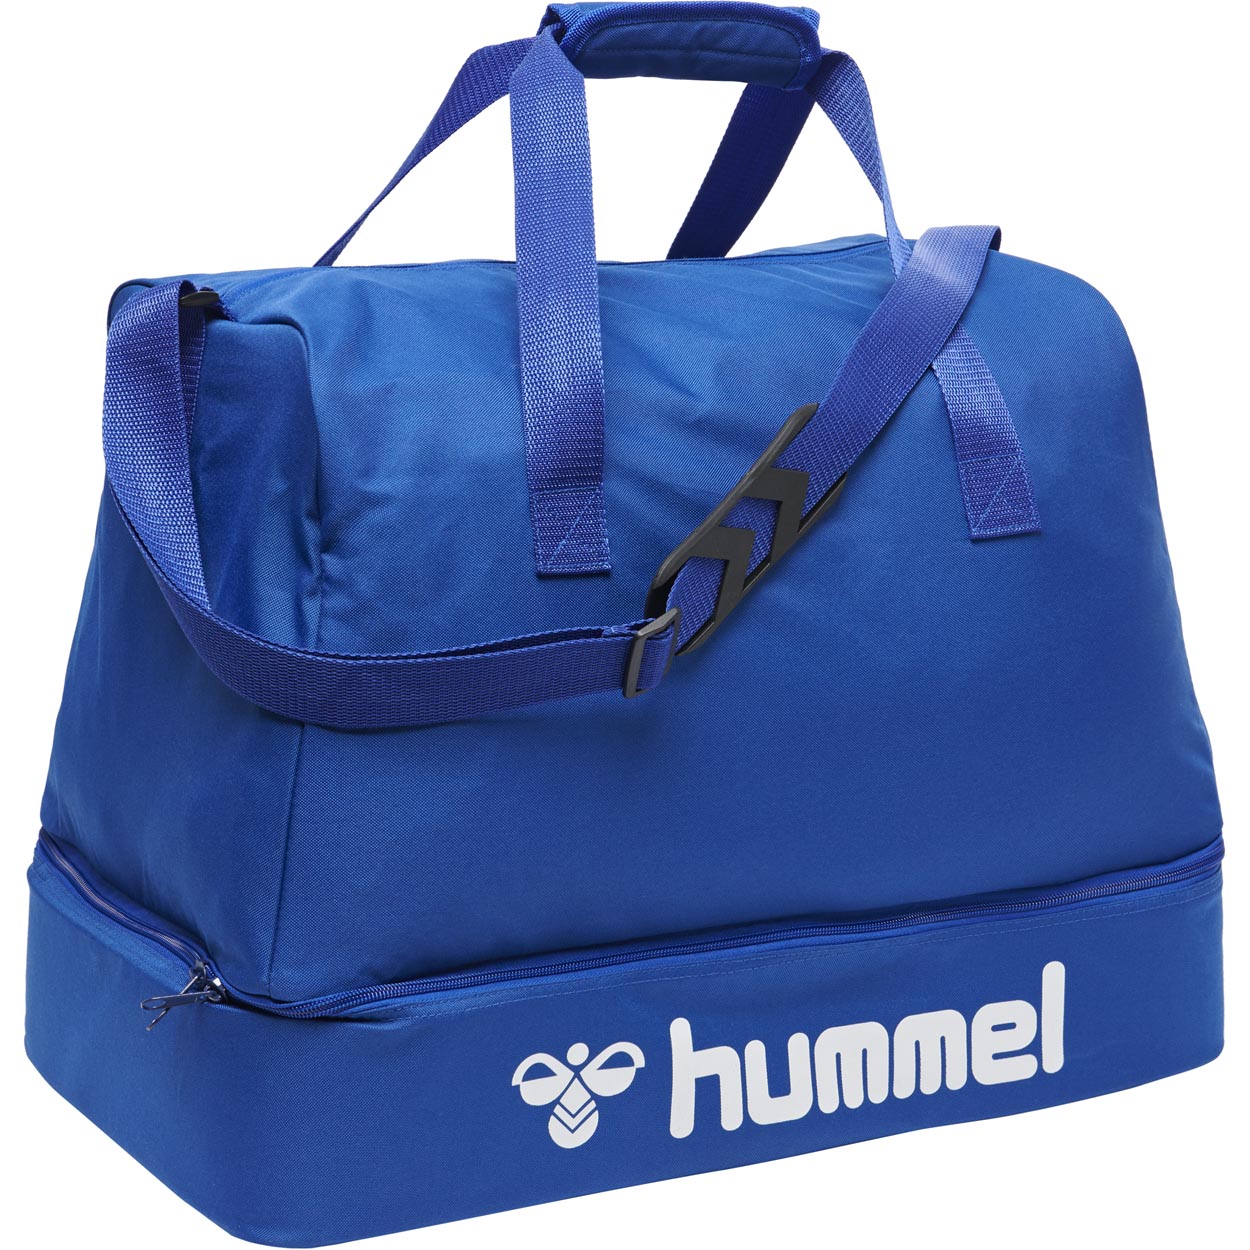 HUMMEL CORE FOOTBALL BAG True blue